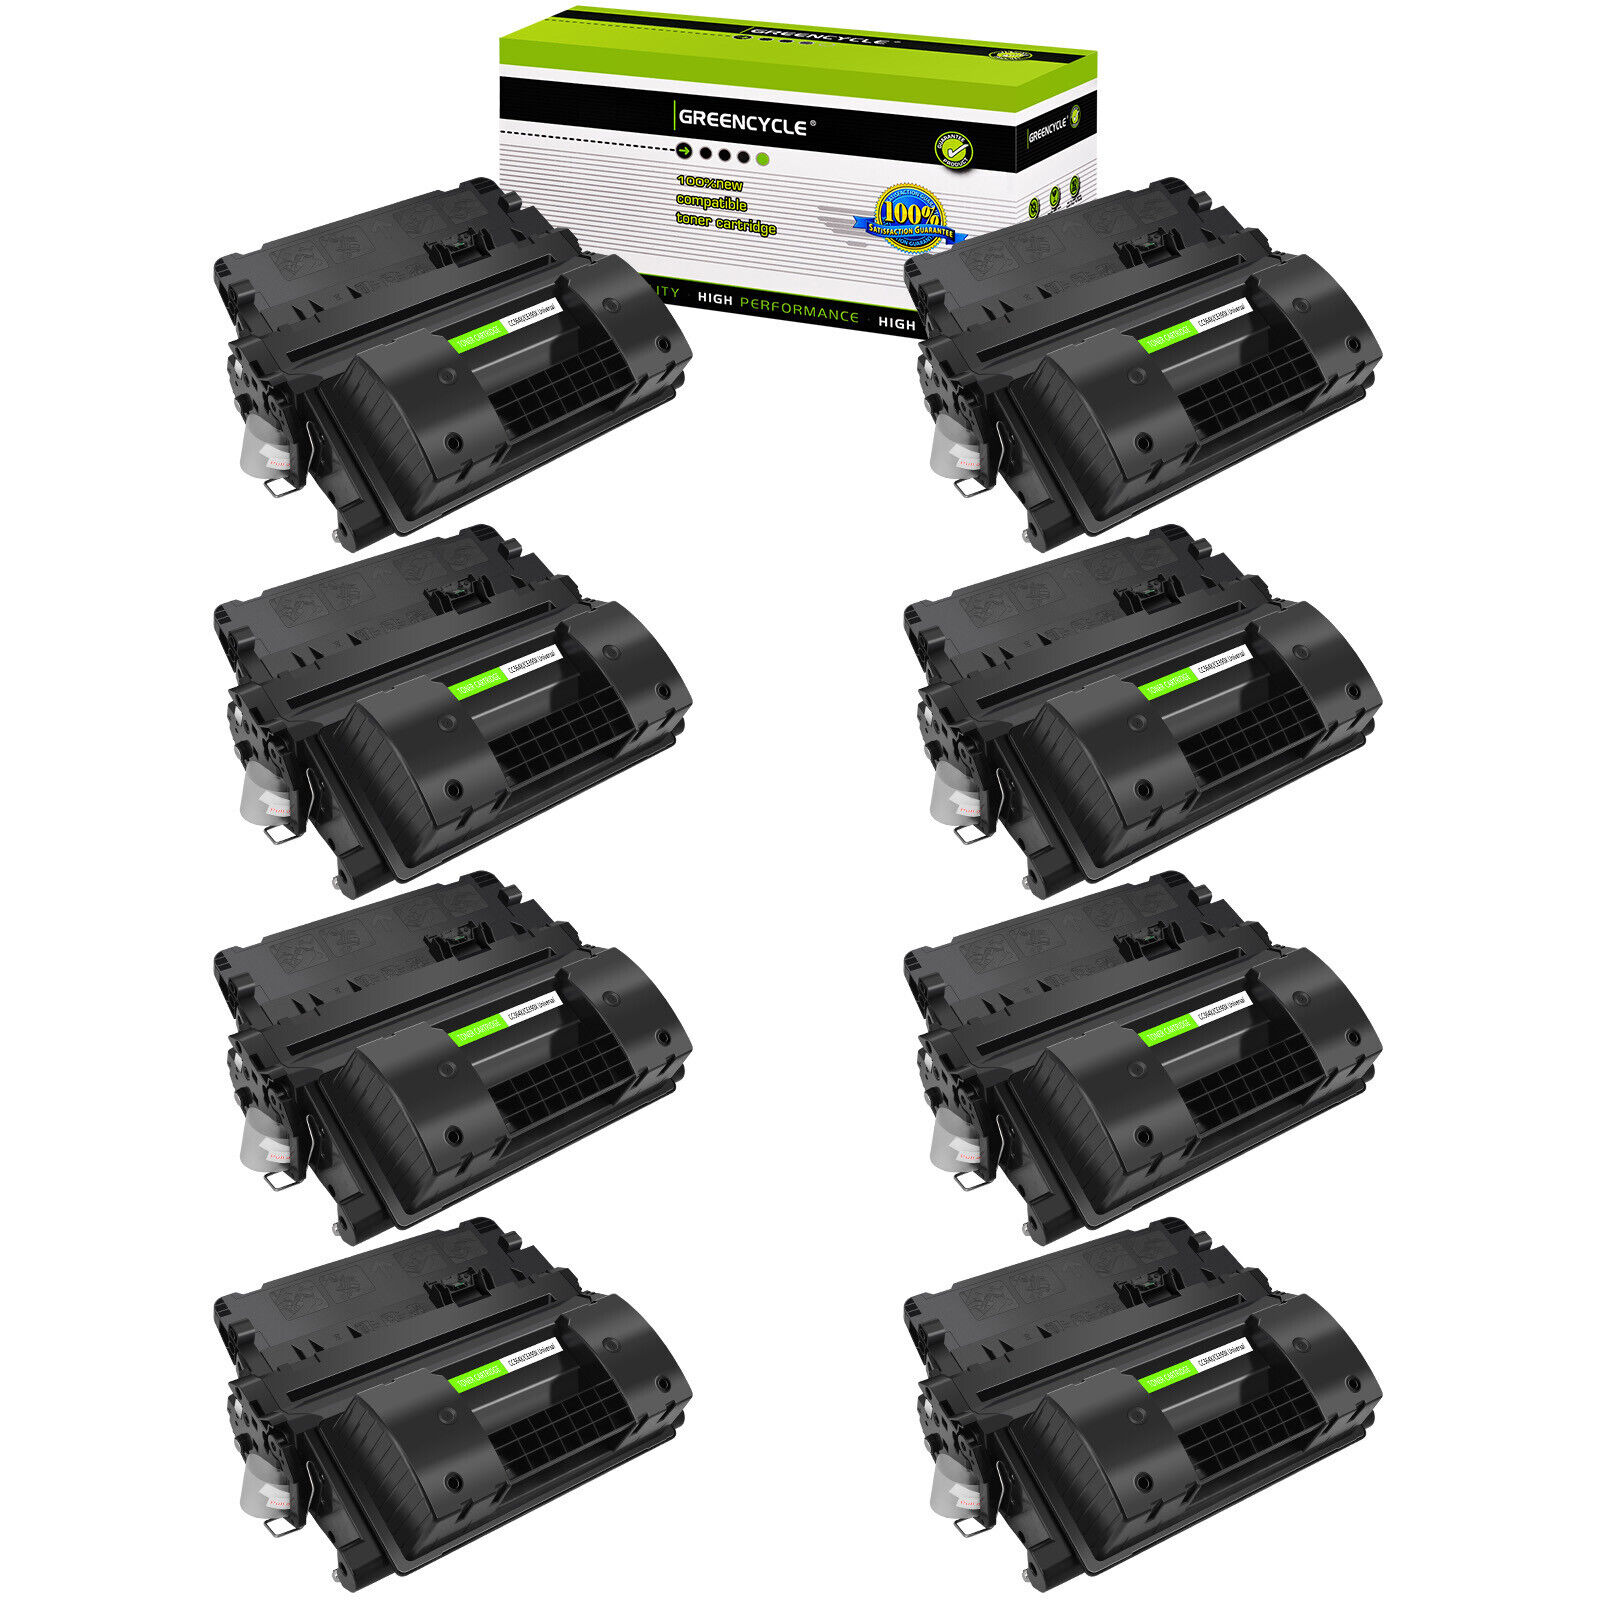 8PK Black CC364X Toner Cartridge for HP LaserJet P4515n P4515tn P4515x P4515xm